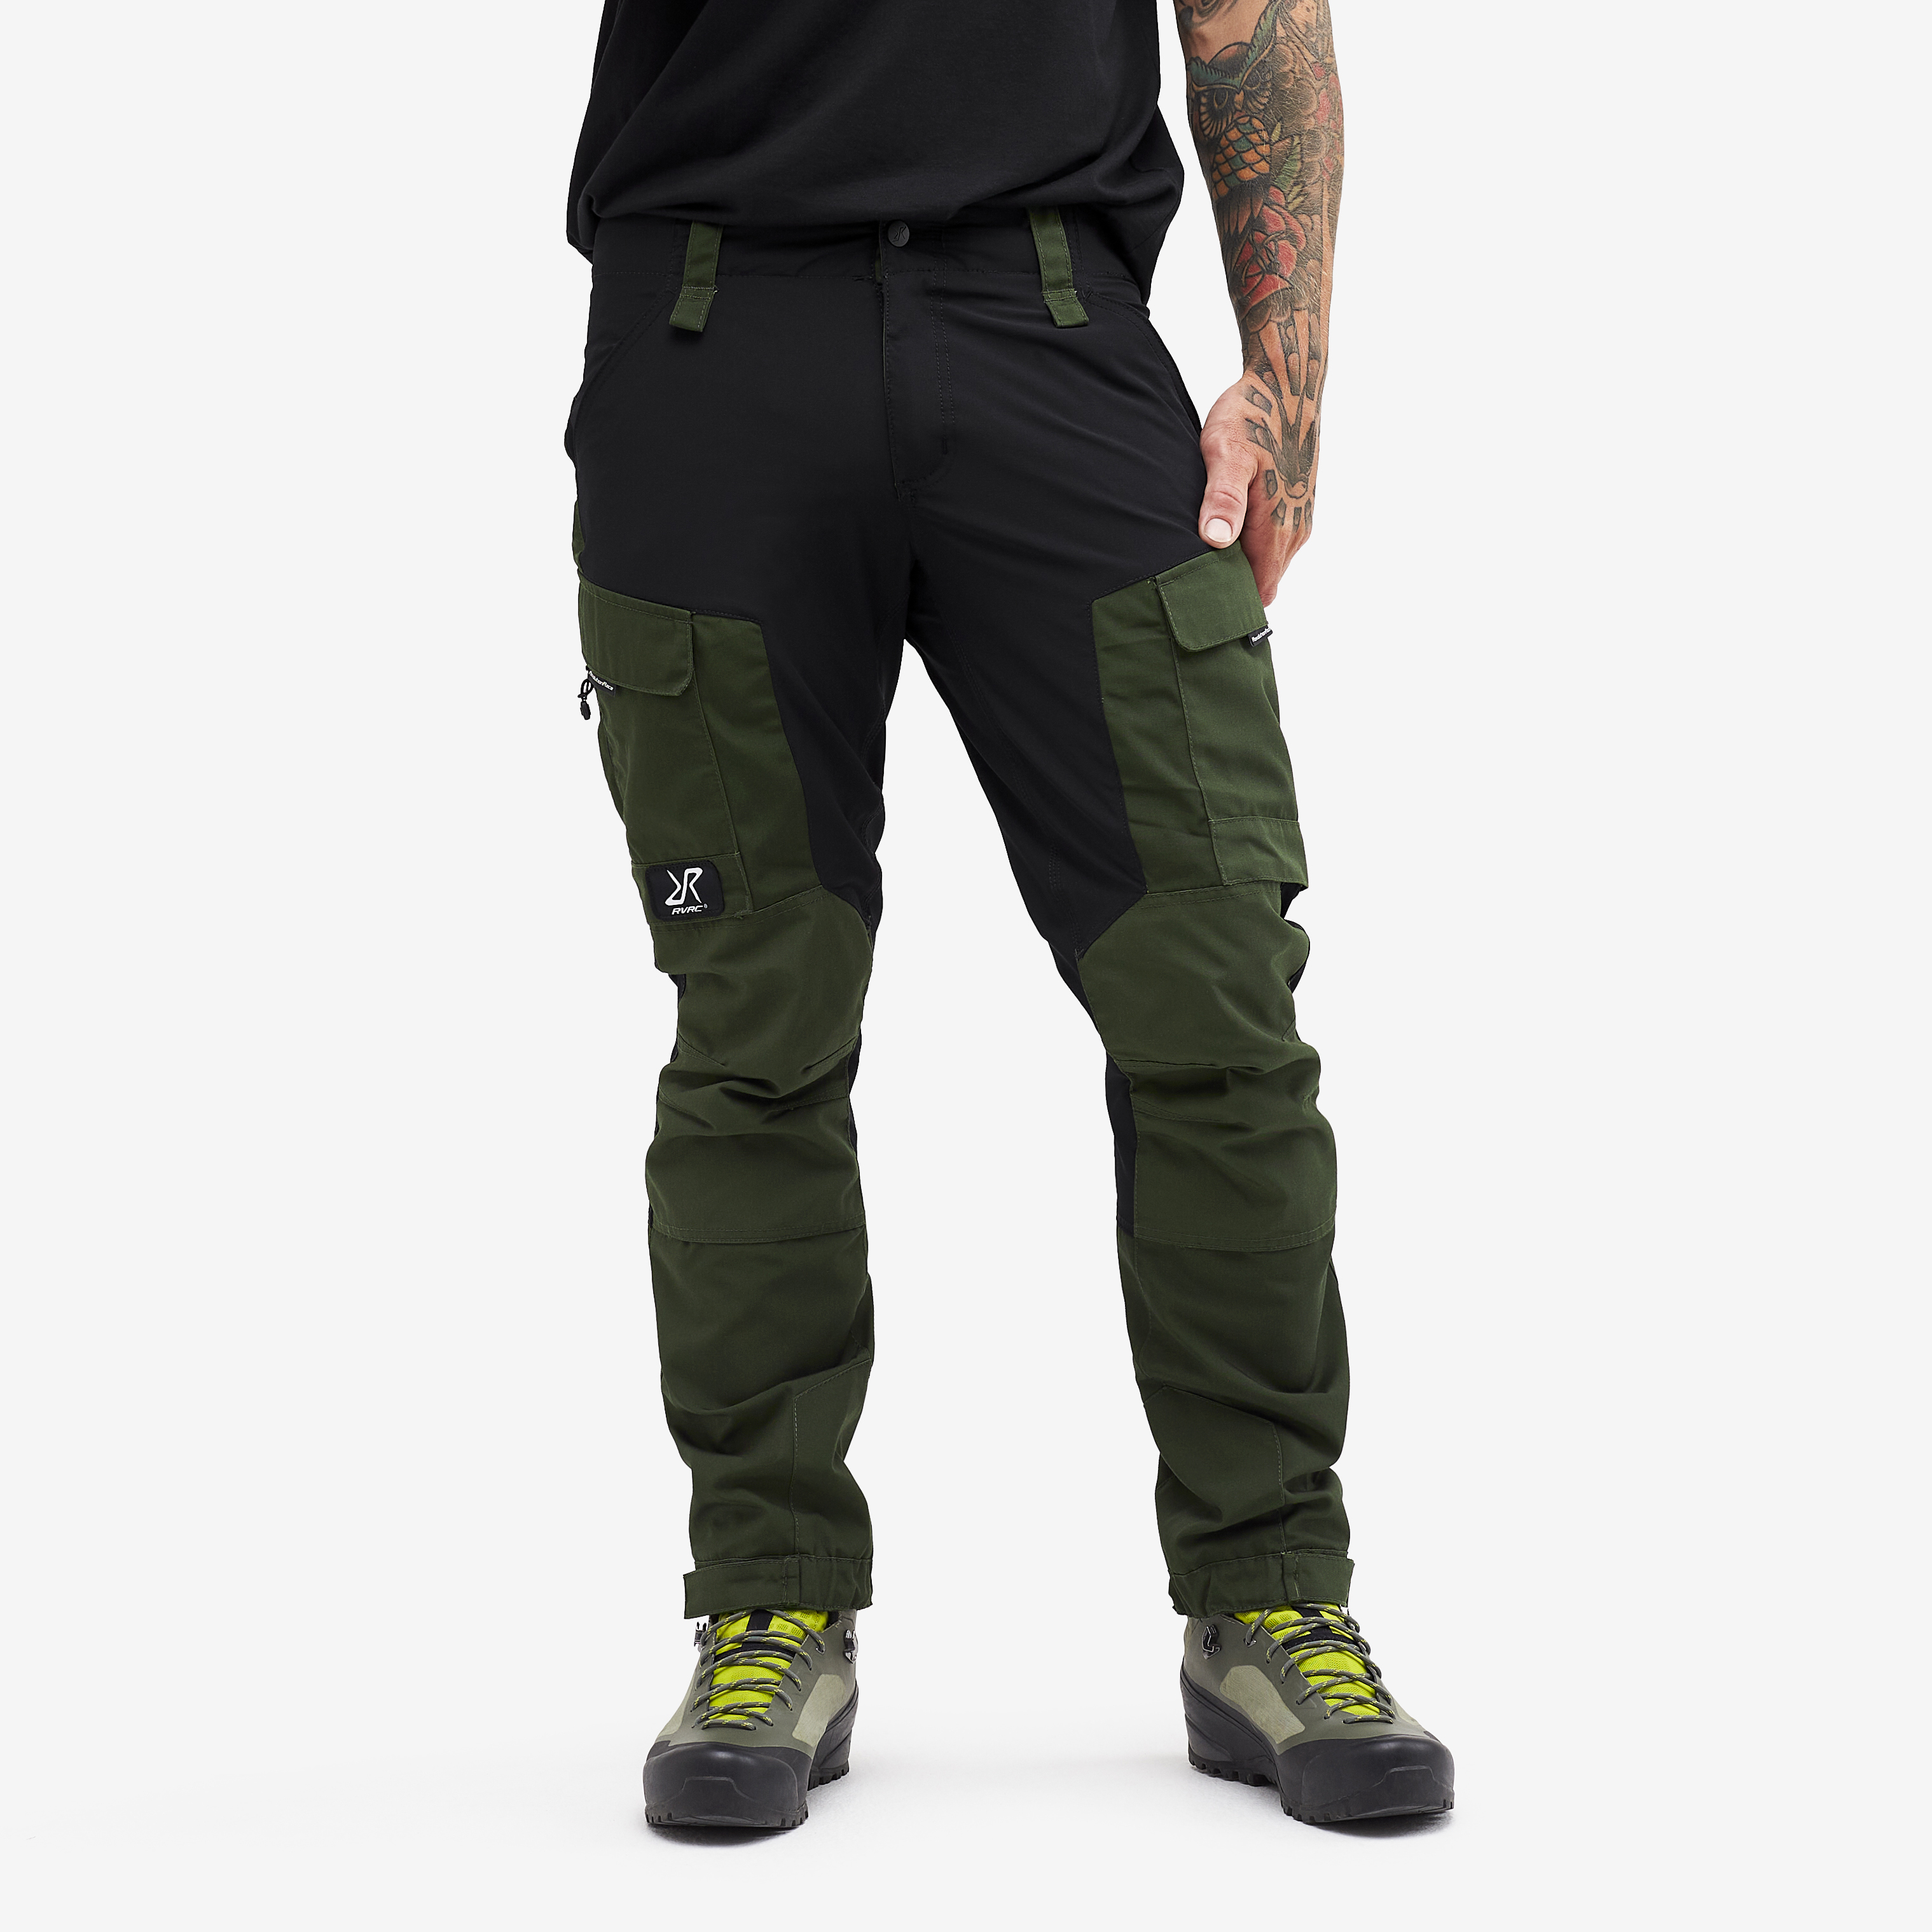 RVRC GP Short friluftsbukse til menn i grønn